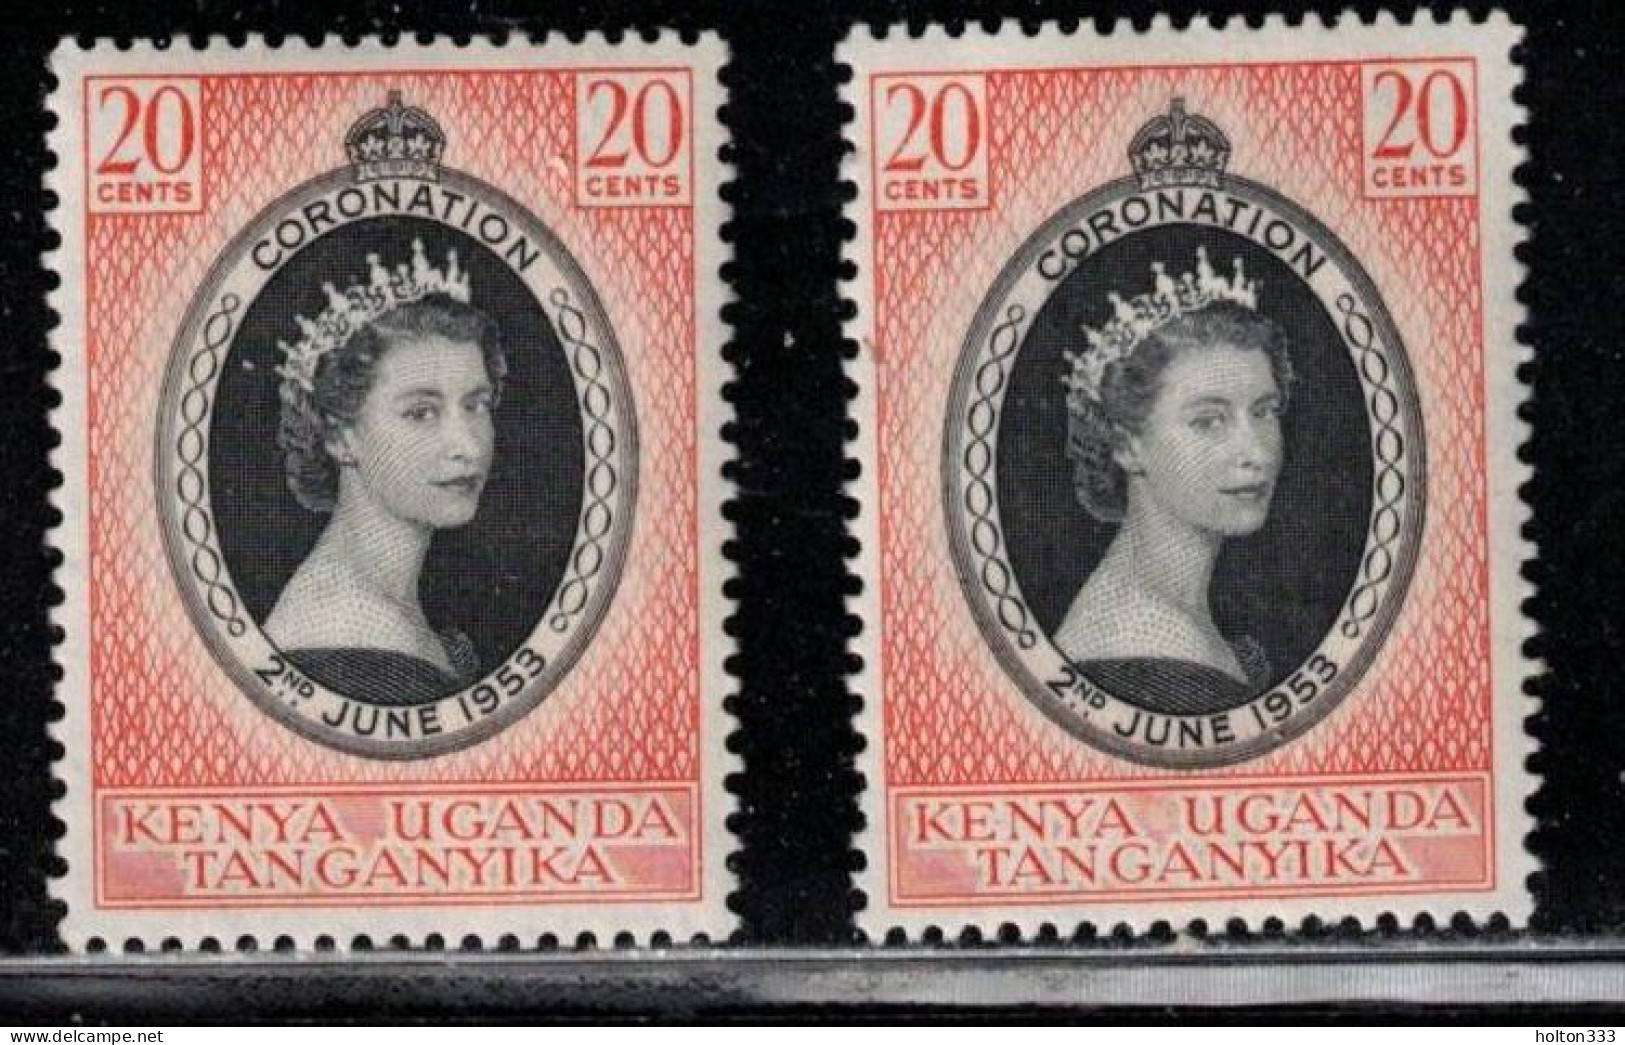 KENYA, UGANDA & TANGANYIKA Scott # 101 MH X 2 - QEII Coronation - Kenya, Uganda & Tanganyika